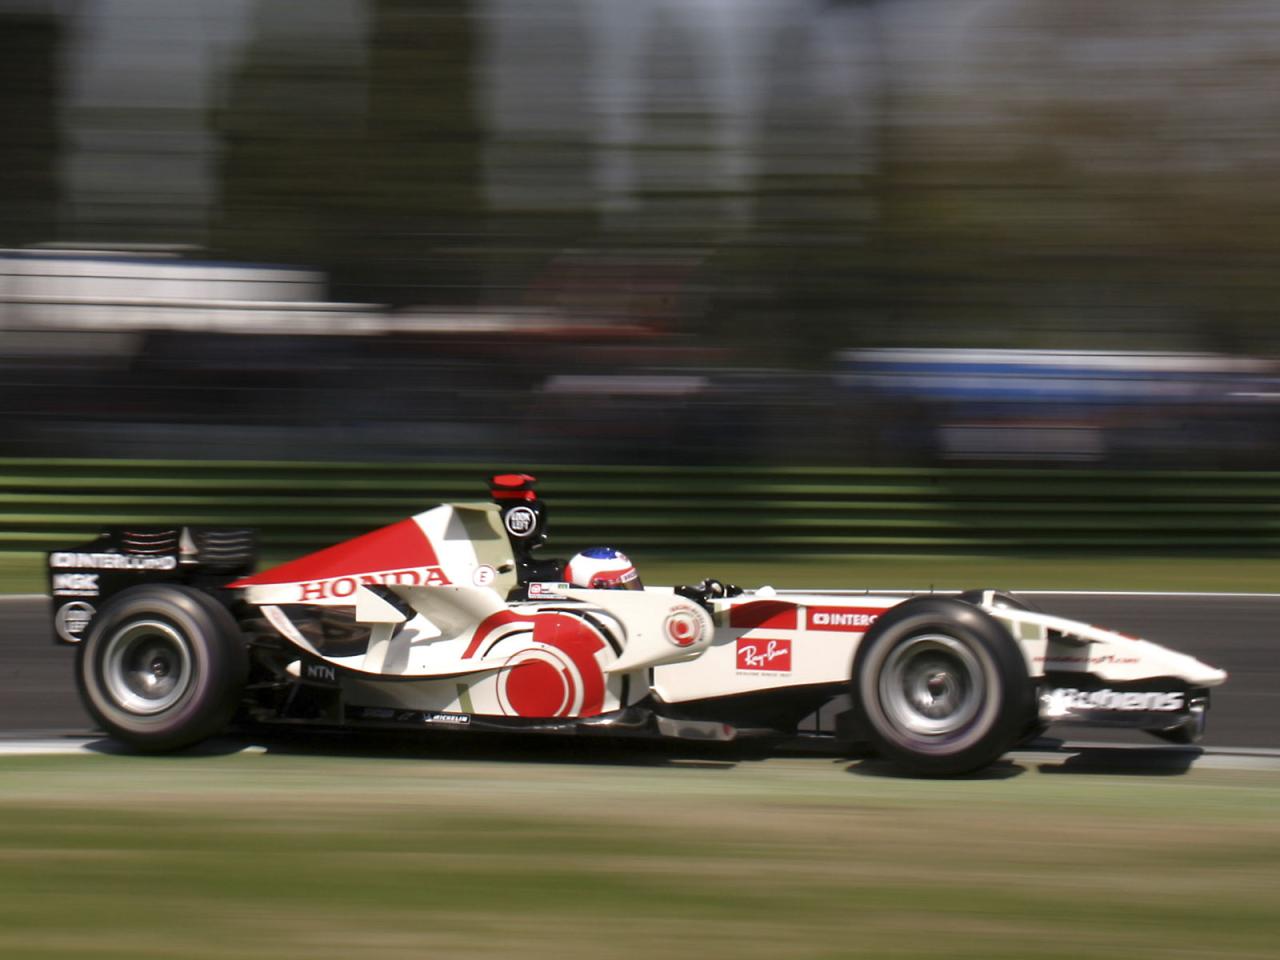 2006 Honda RA106